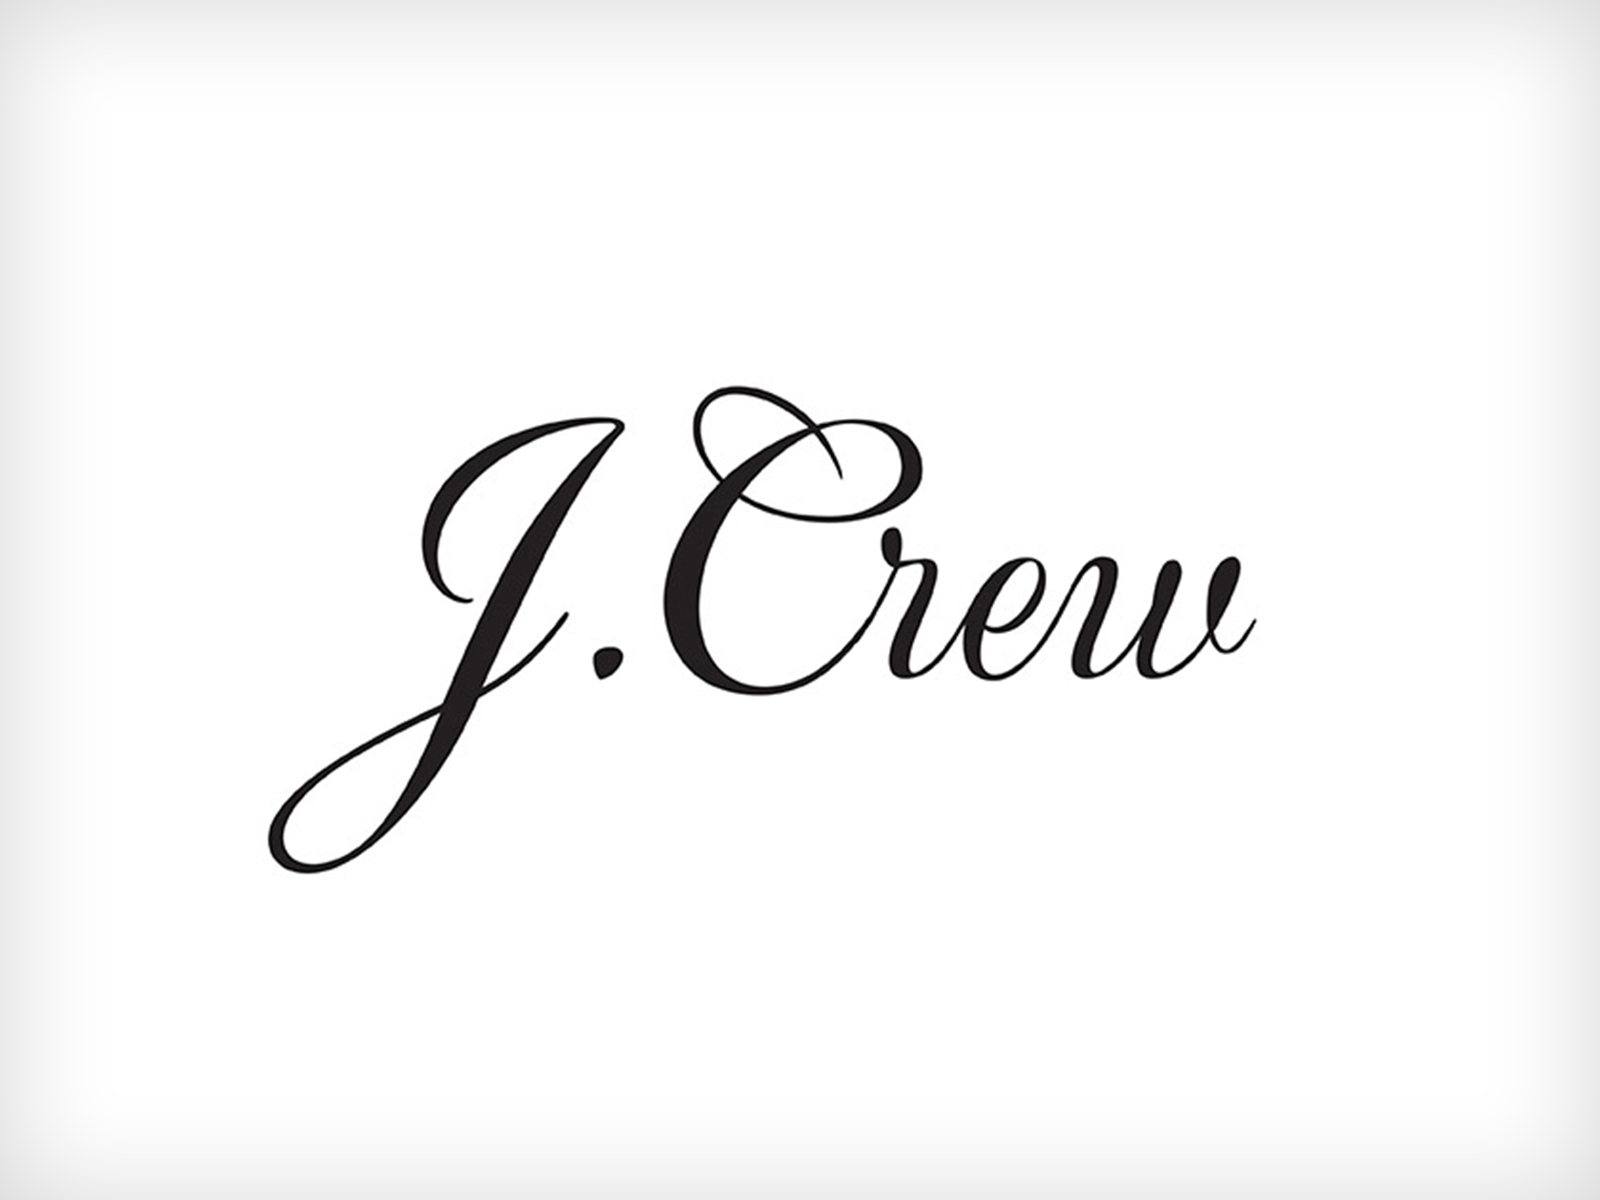 j crew logo font - Fidel Fierro